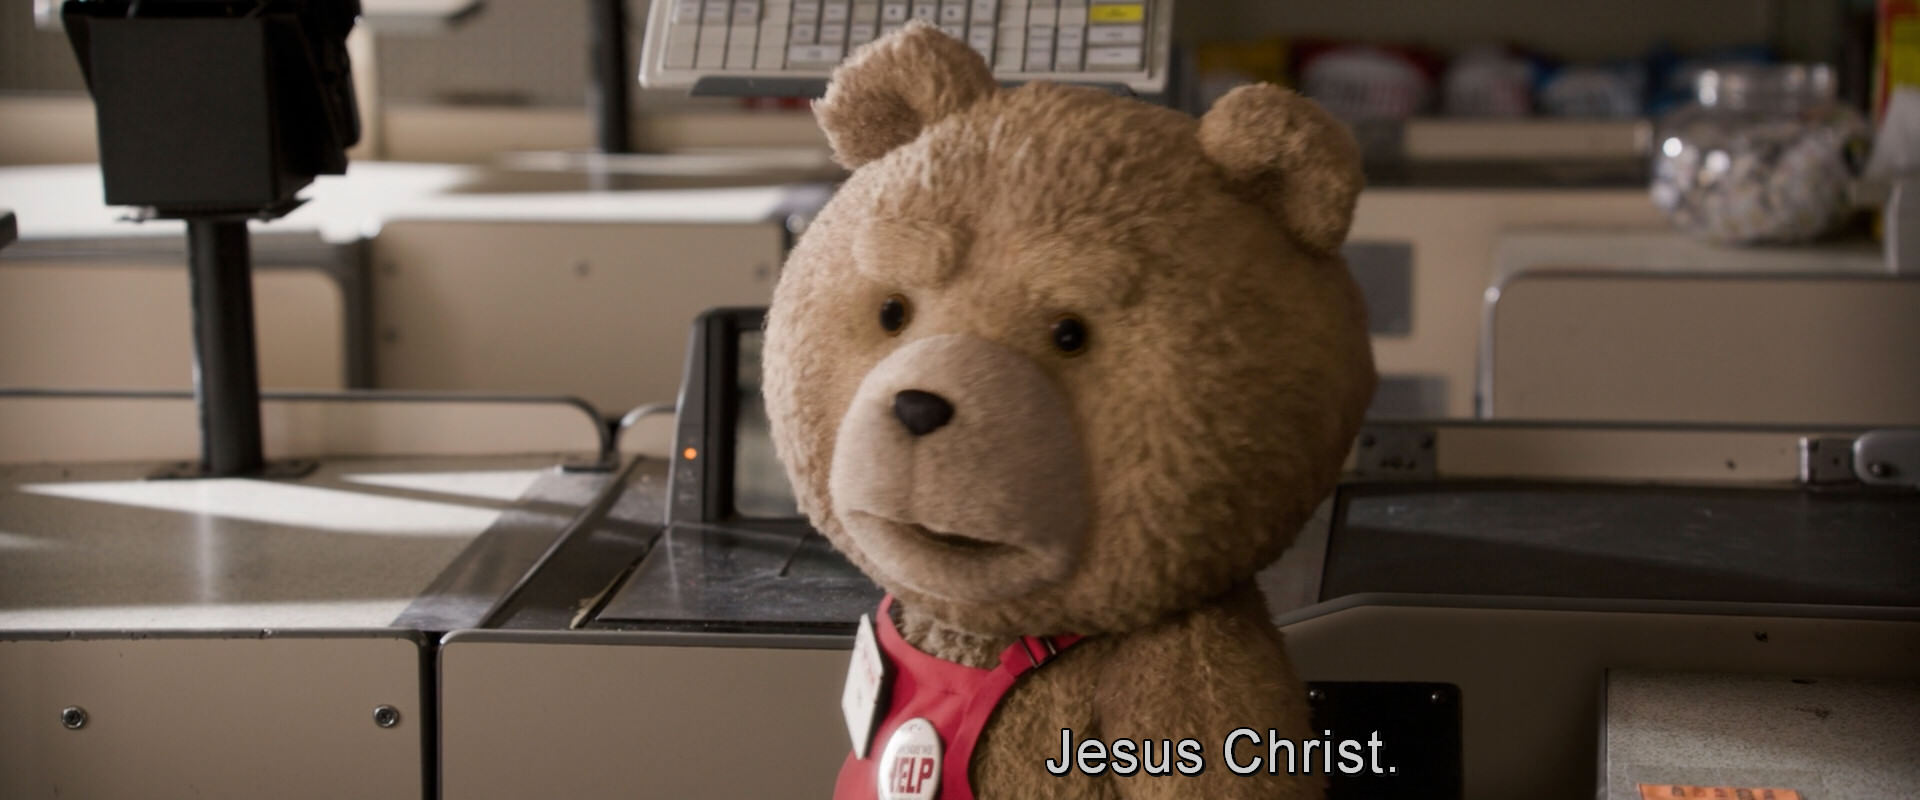 Третий лишний второй. Третий лишний 2 Тэд. Тед (третий лишний). Третий лишний медведь Тед. Третий лишний 2 - Ted 2 (2015).